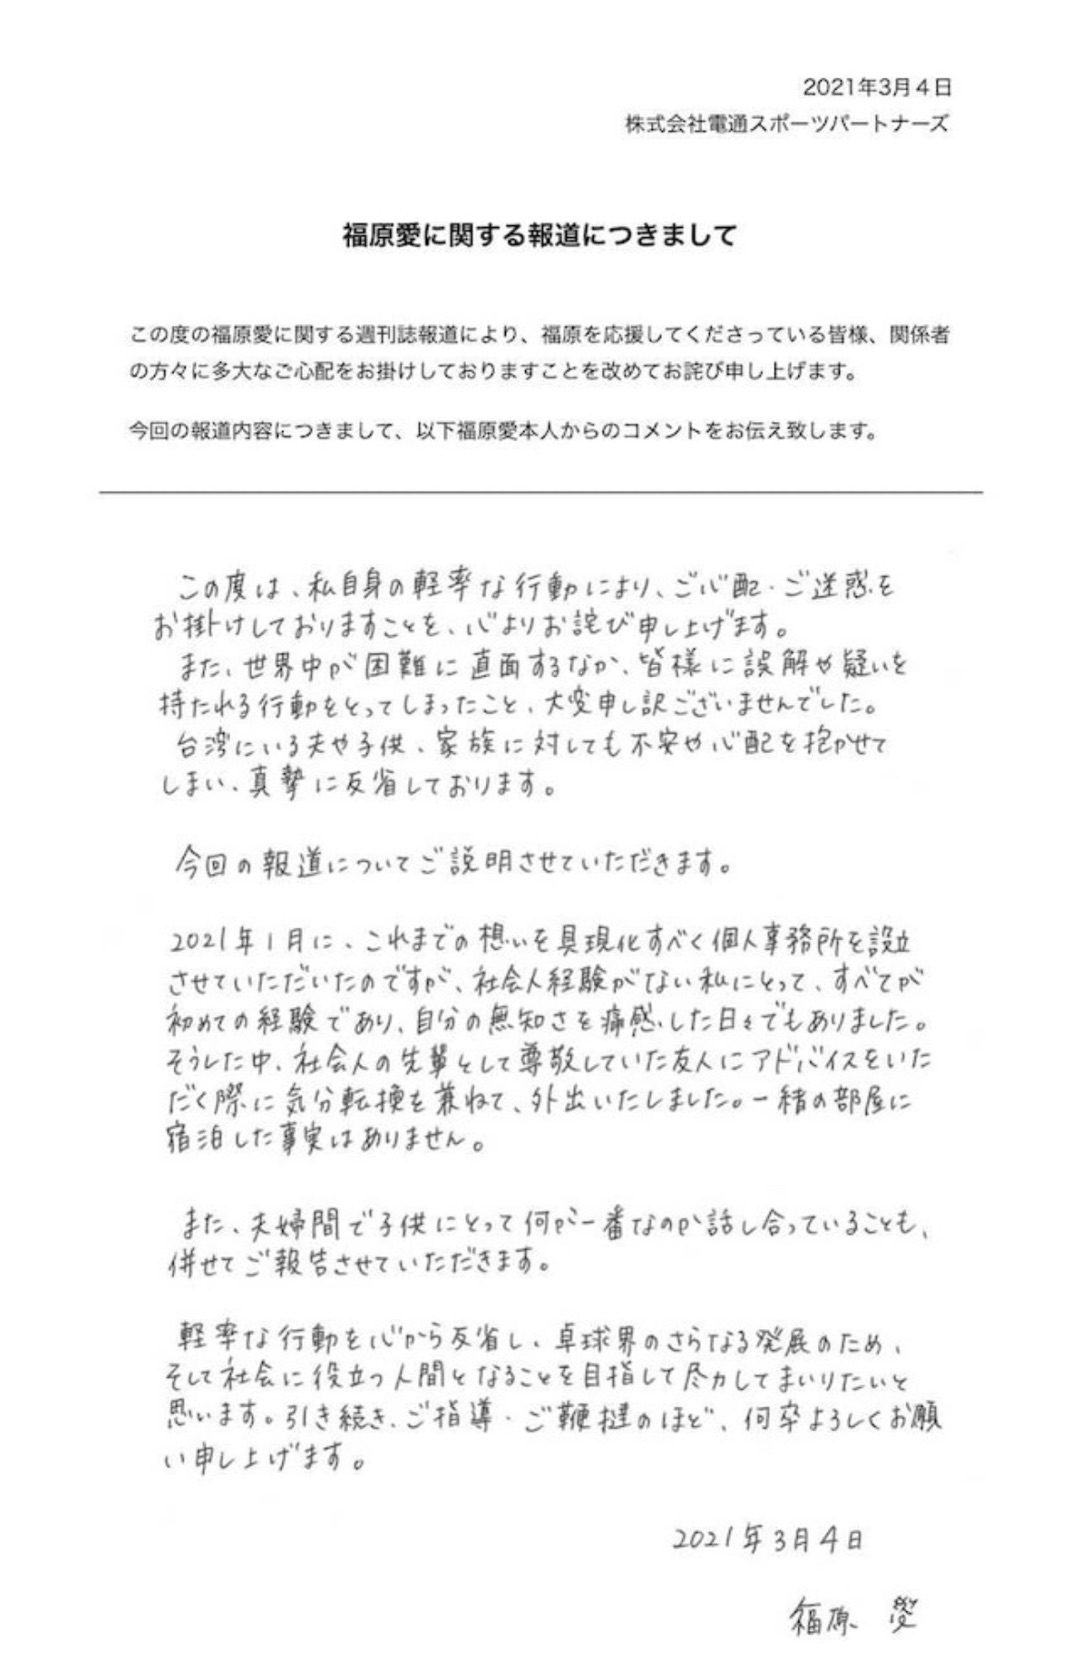 【娱报】【福原爱通过公司官网发布声明道歉】福原爱晒亲笔信再道歉